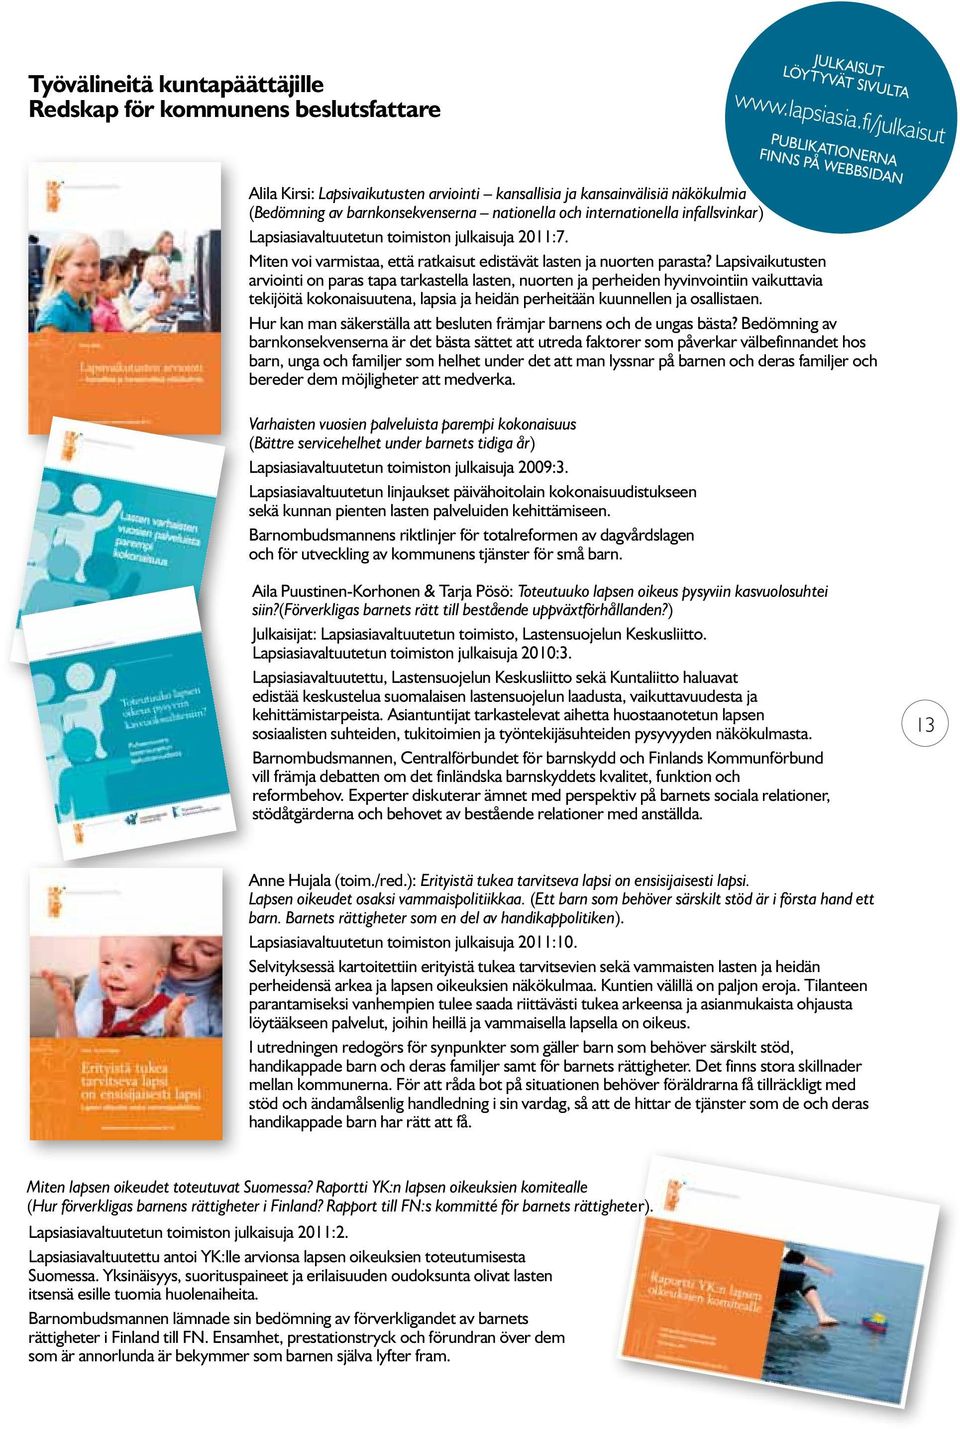 infallsvinkar) Lapsiasiavaltuutetun toimiston julkaisuja 2011:7. Miten voi varmistaa, että ratkaisut edistävät lasten ja nuorten parasta?